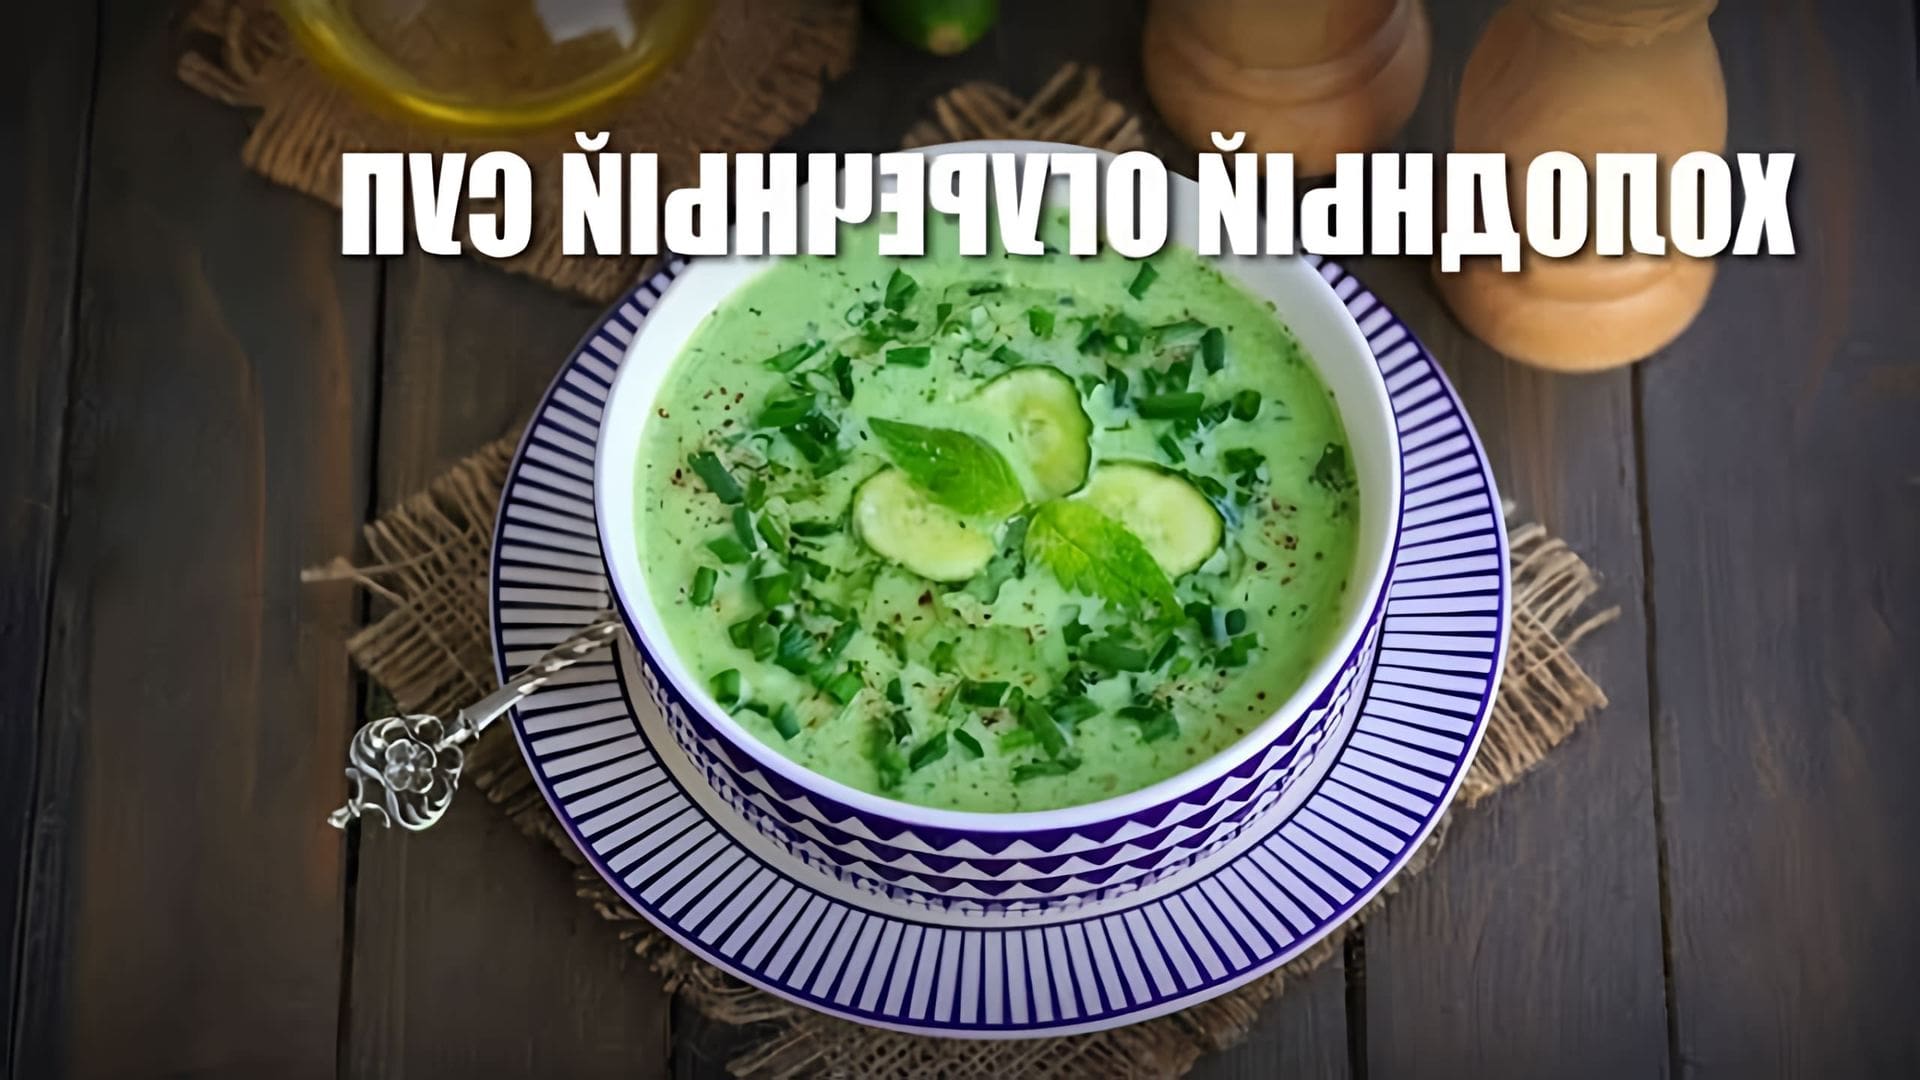 В данном видео демонстрируется рецепт приготовления холодного огуречного супа